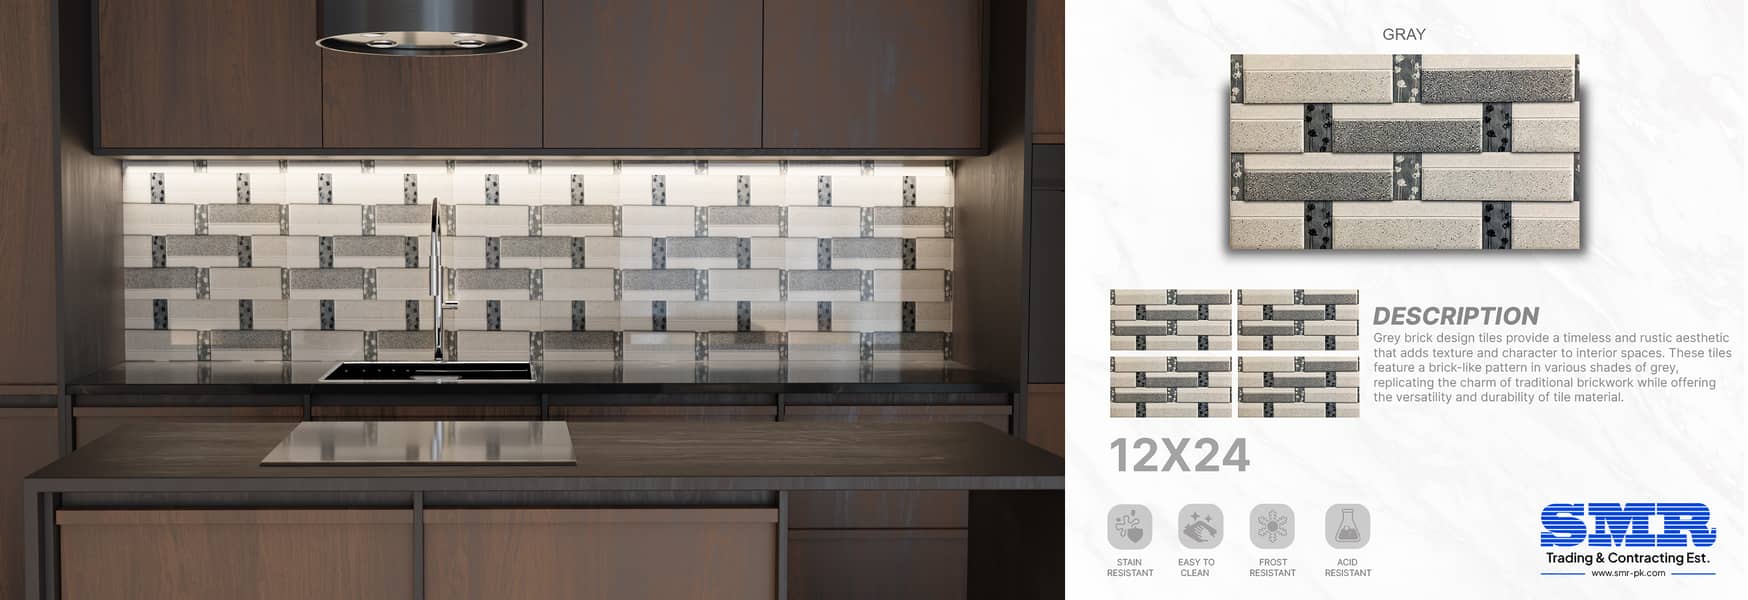 12x24 kitchen tiles 3